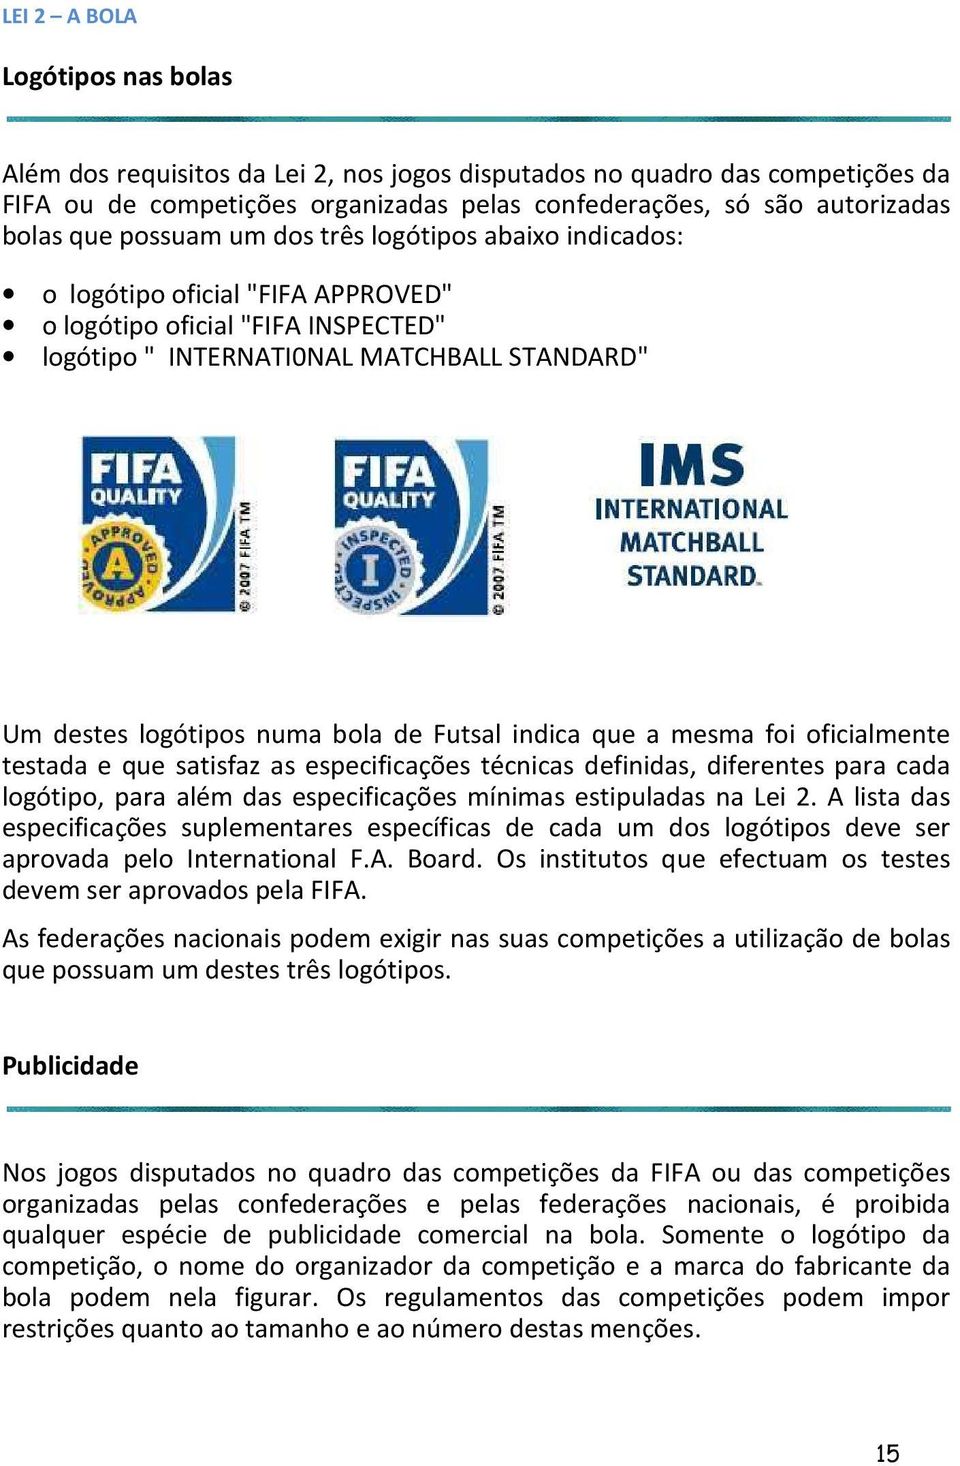 Futsal indica que a mesma ma foi oficialmente testada e que satisfaz as especificações técnicas definidas, diferentes para cada logótipo, para além das especificações mínimas estipuladas na Lei 2.